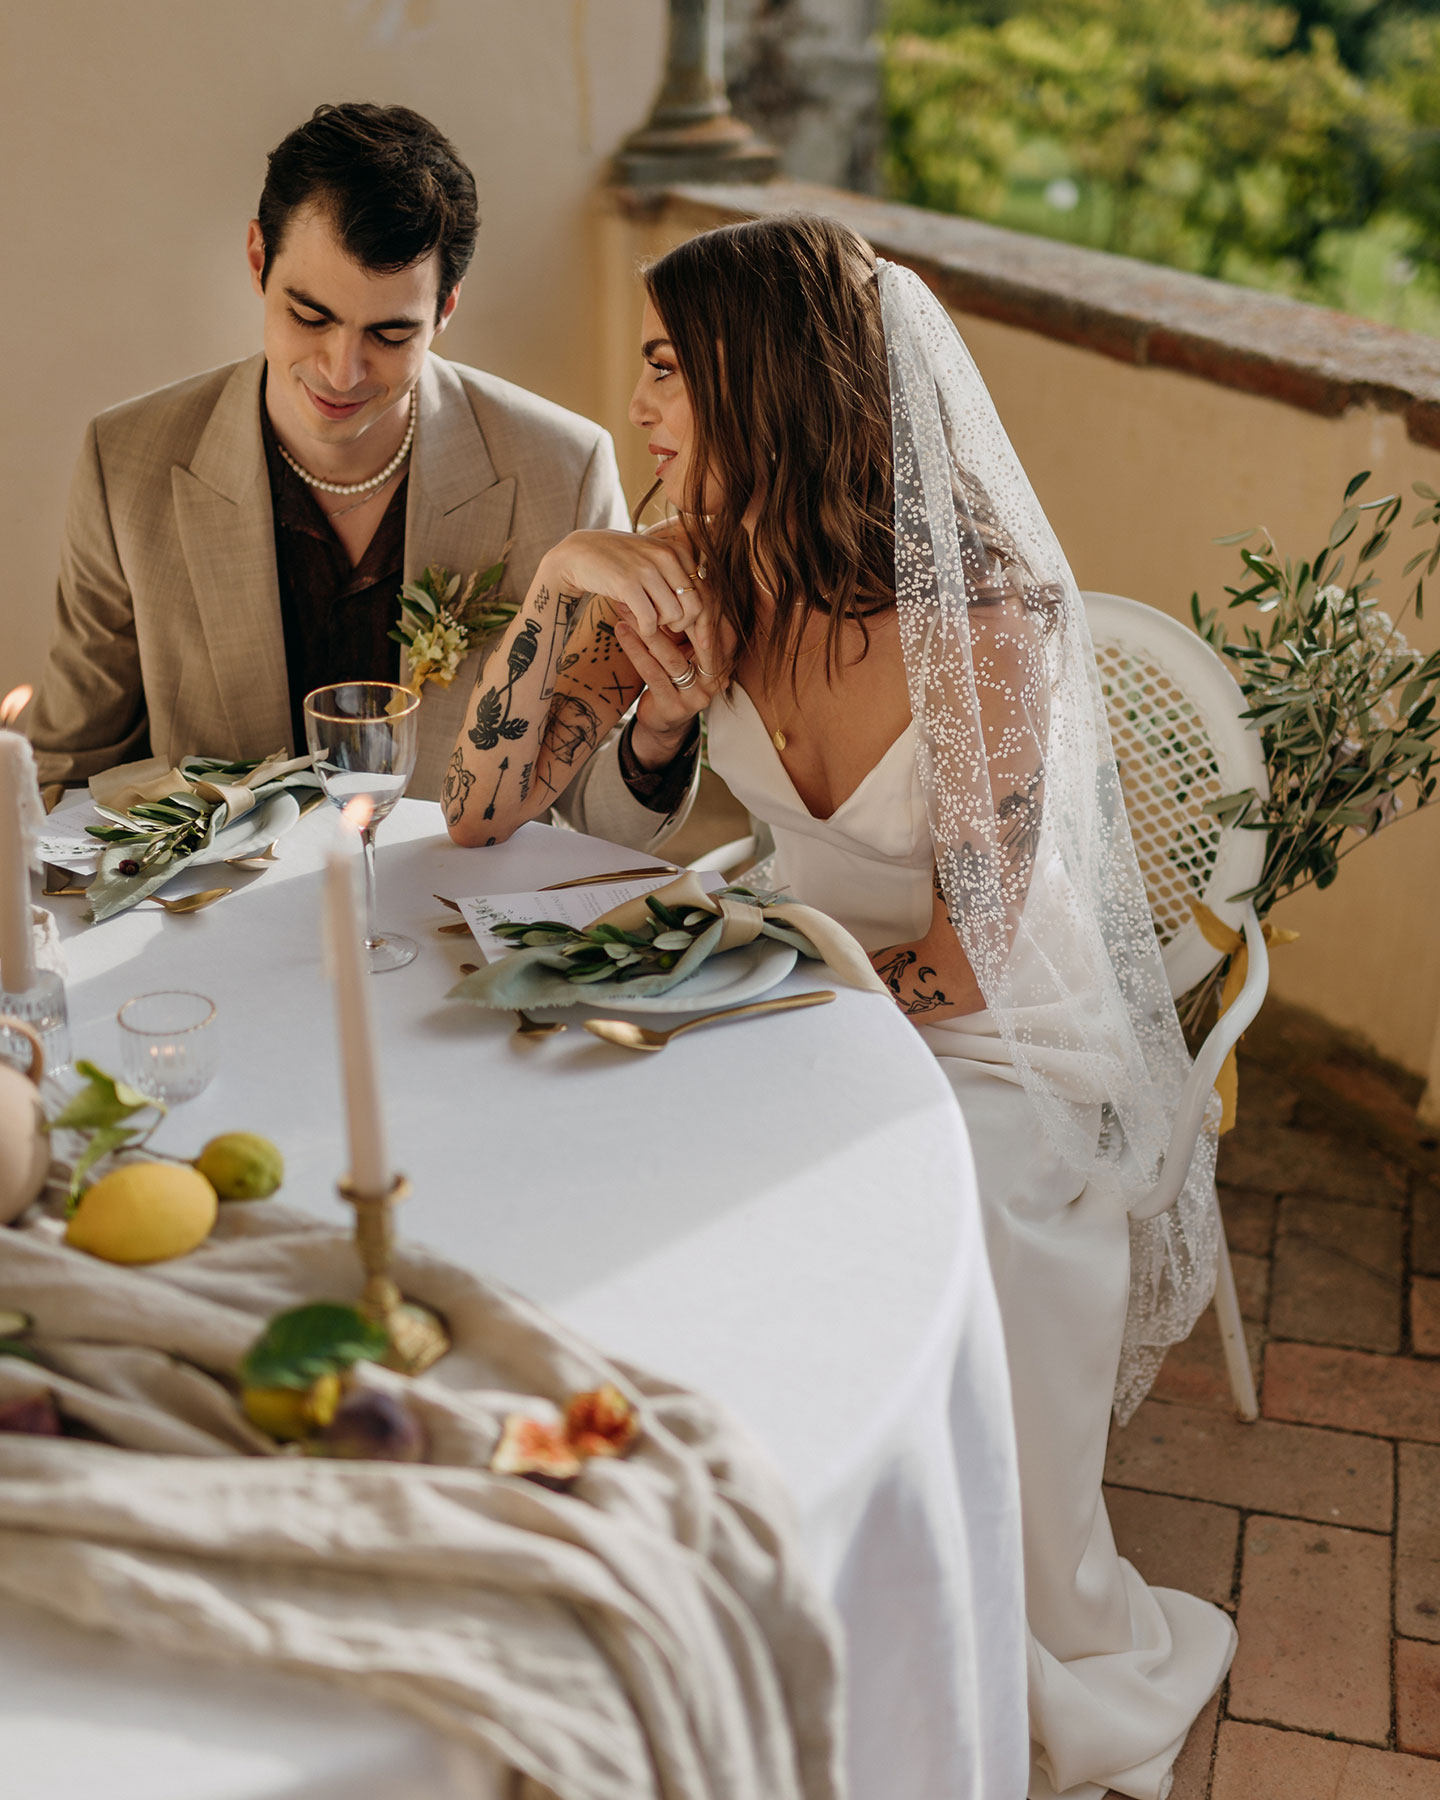 Das Hochzeitspaar sitzt am gedeckten Hochzeitstisch und die Braut schaut den Bräutigam verliebt an.